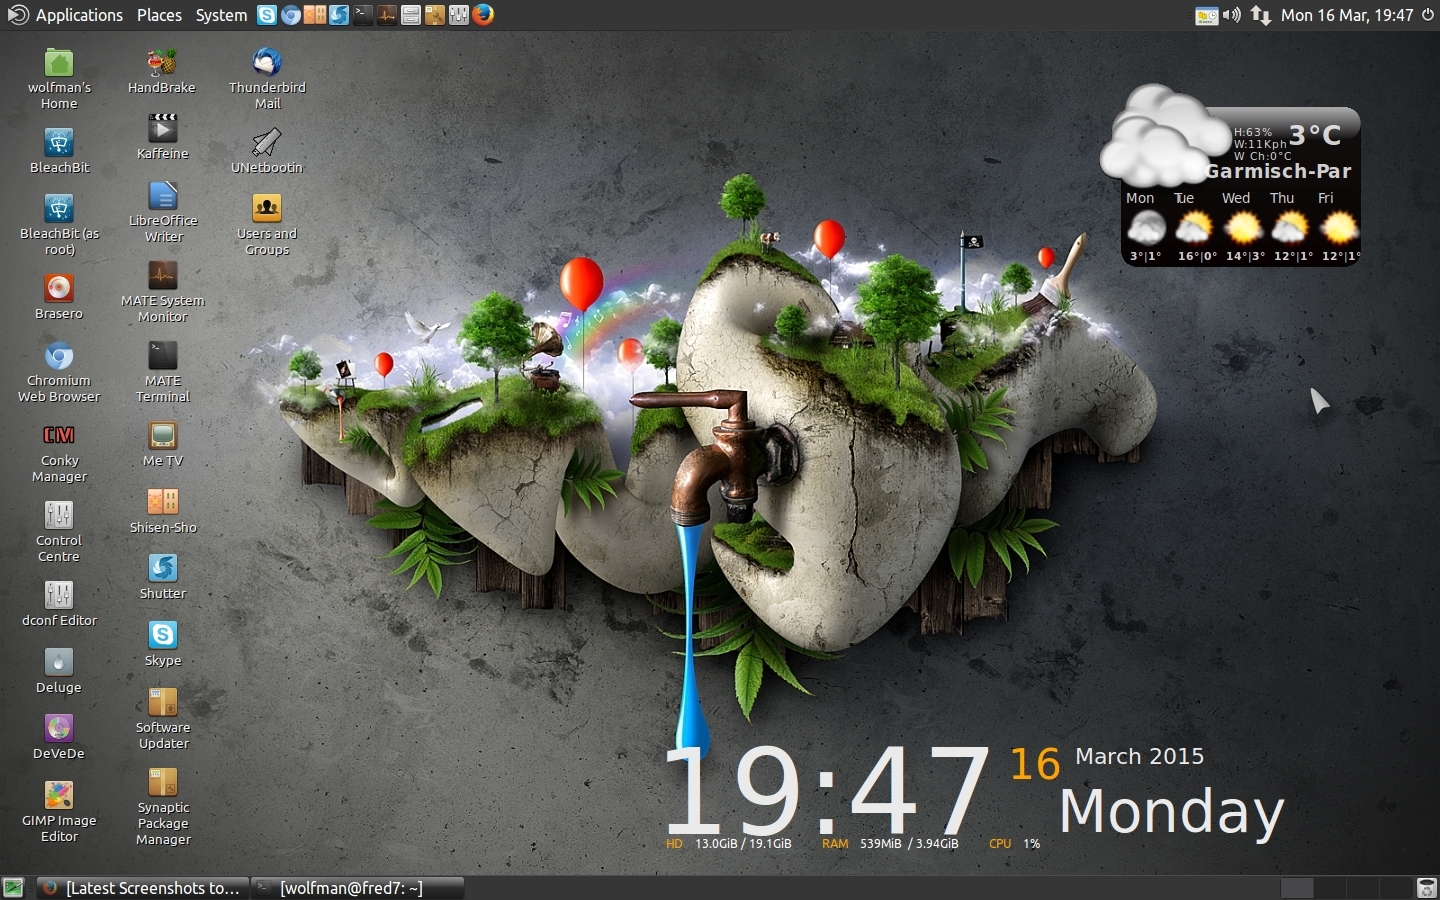 Azië gewicht Veroveraar My Ubuntu Mate 15.04 desktop - Screenshots - Ubuntu MATE Community